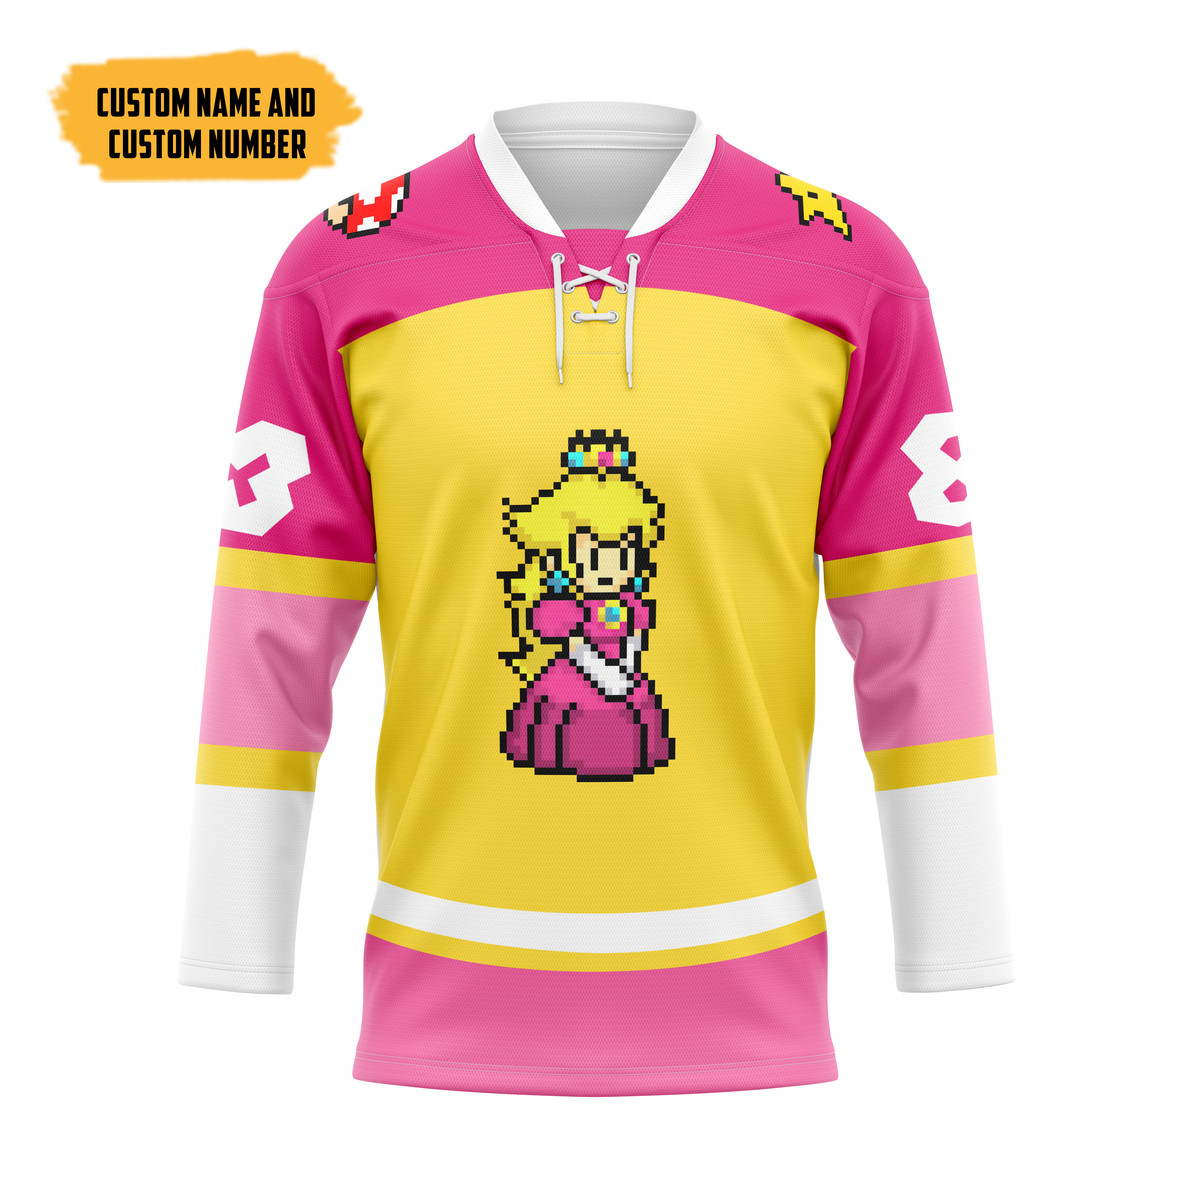 The Best Hockey Jersey Shirt 136